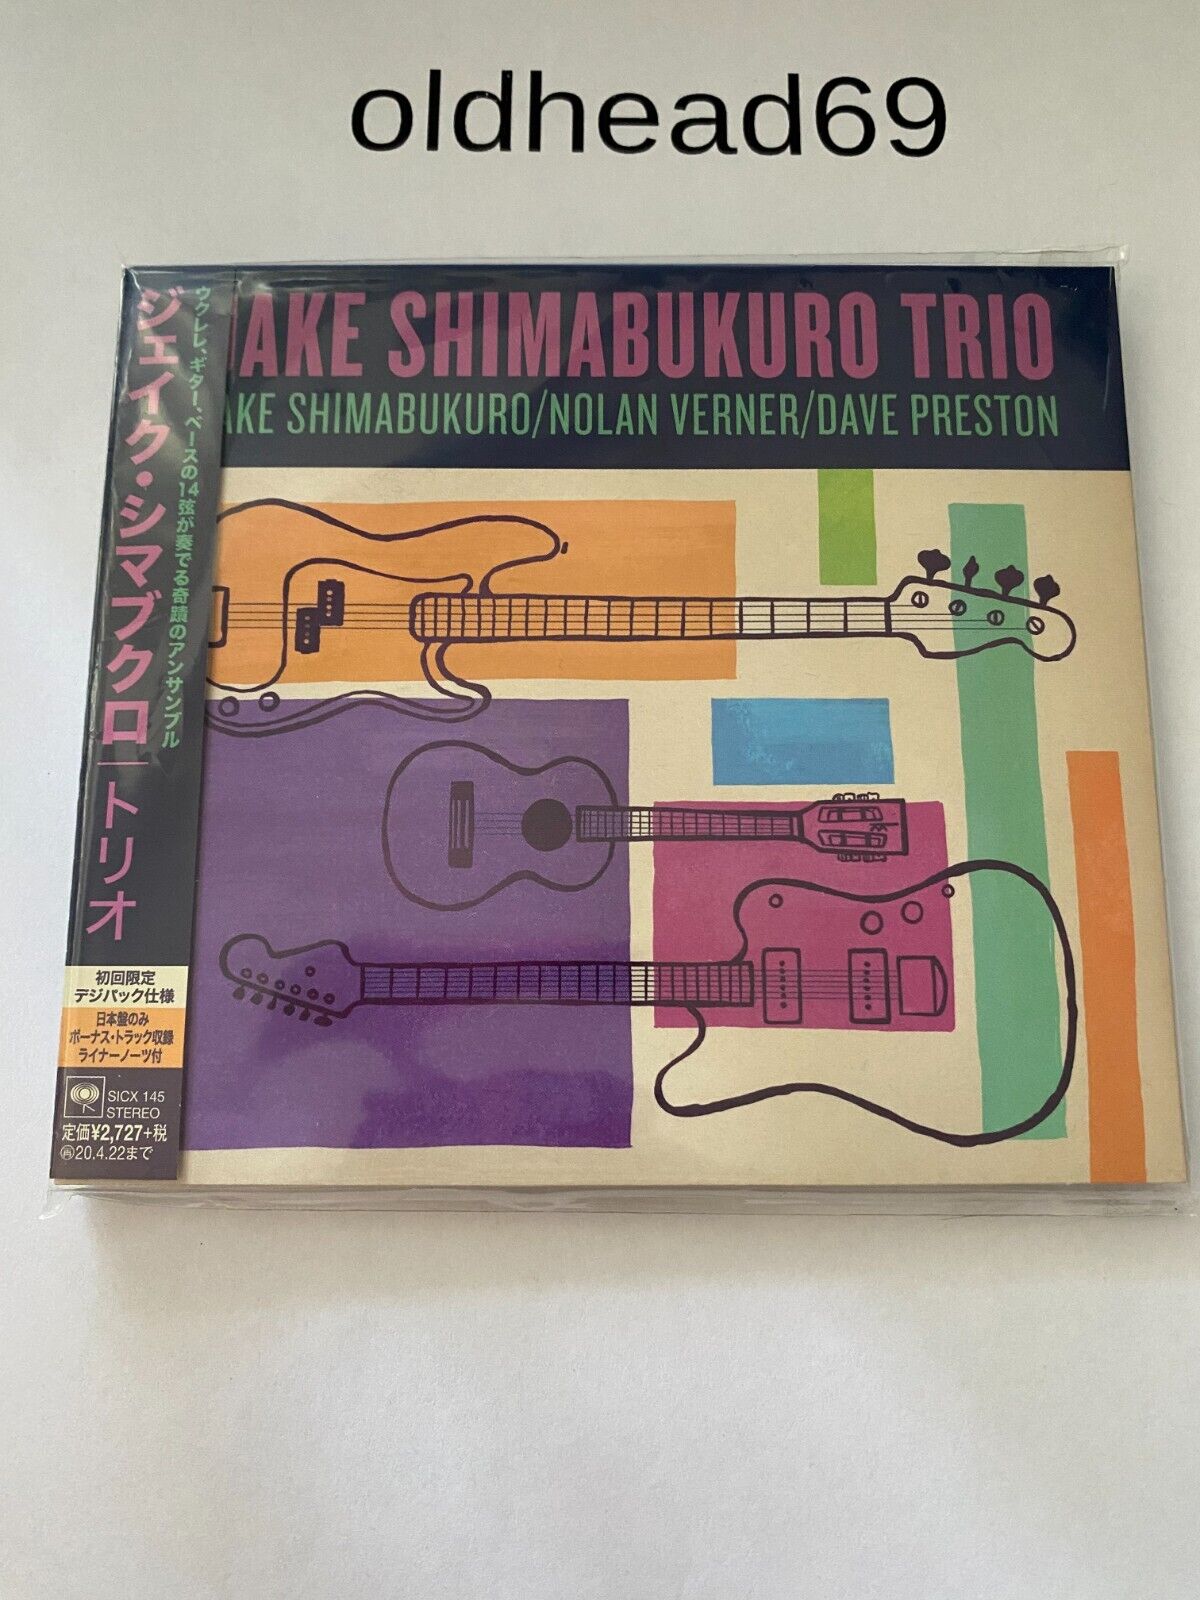 JAKE SHIMABUKURO-TRIO-JAPAN CD +Tracking number